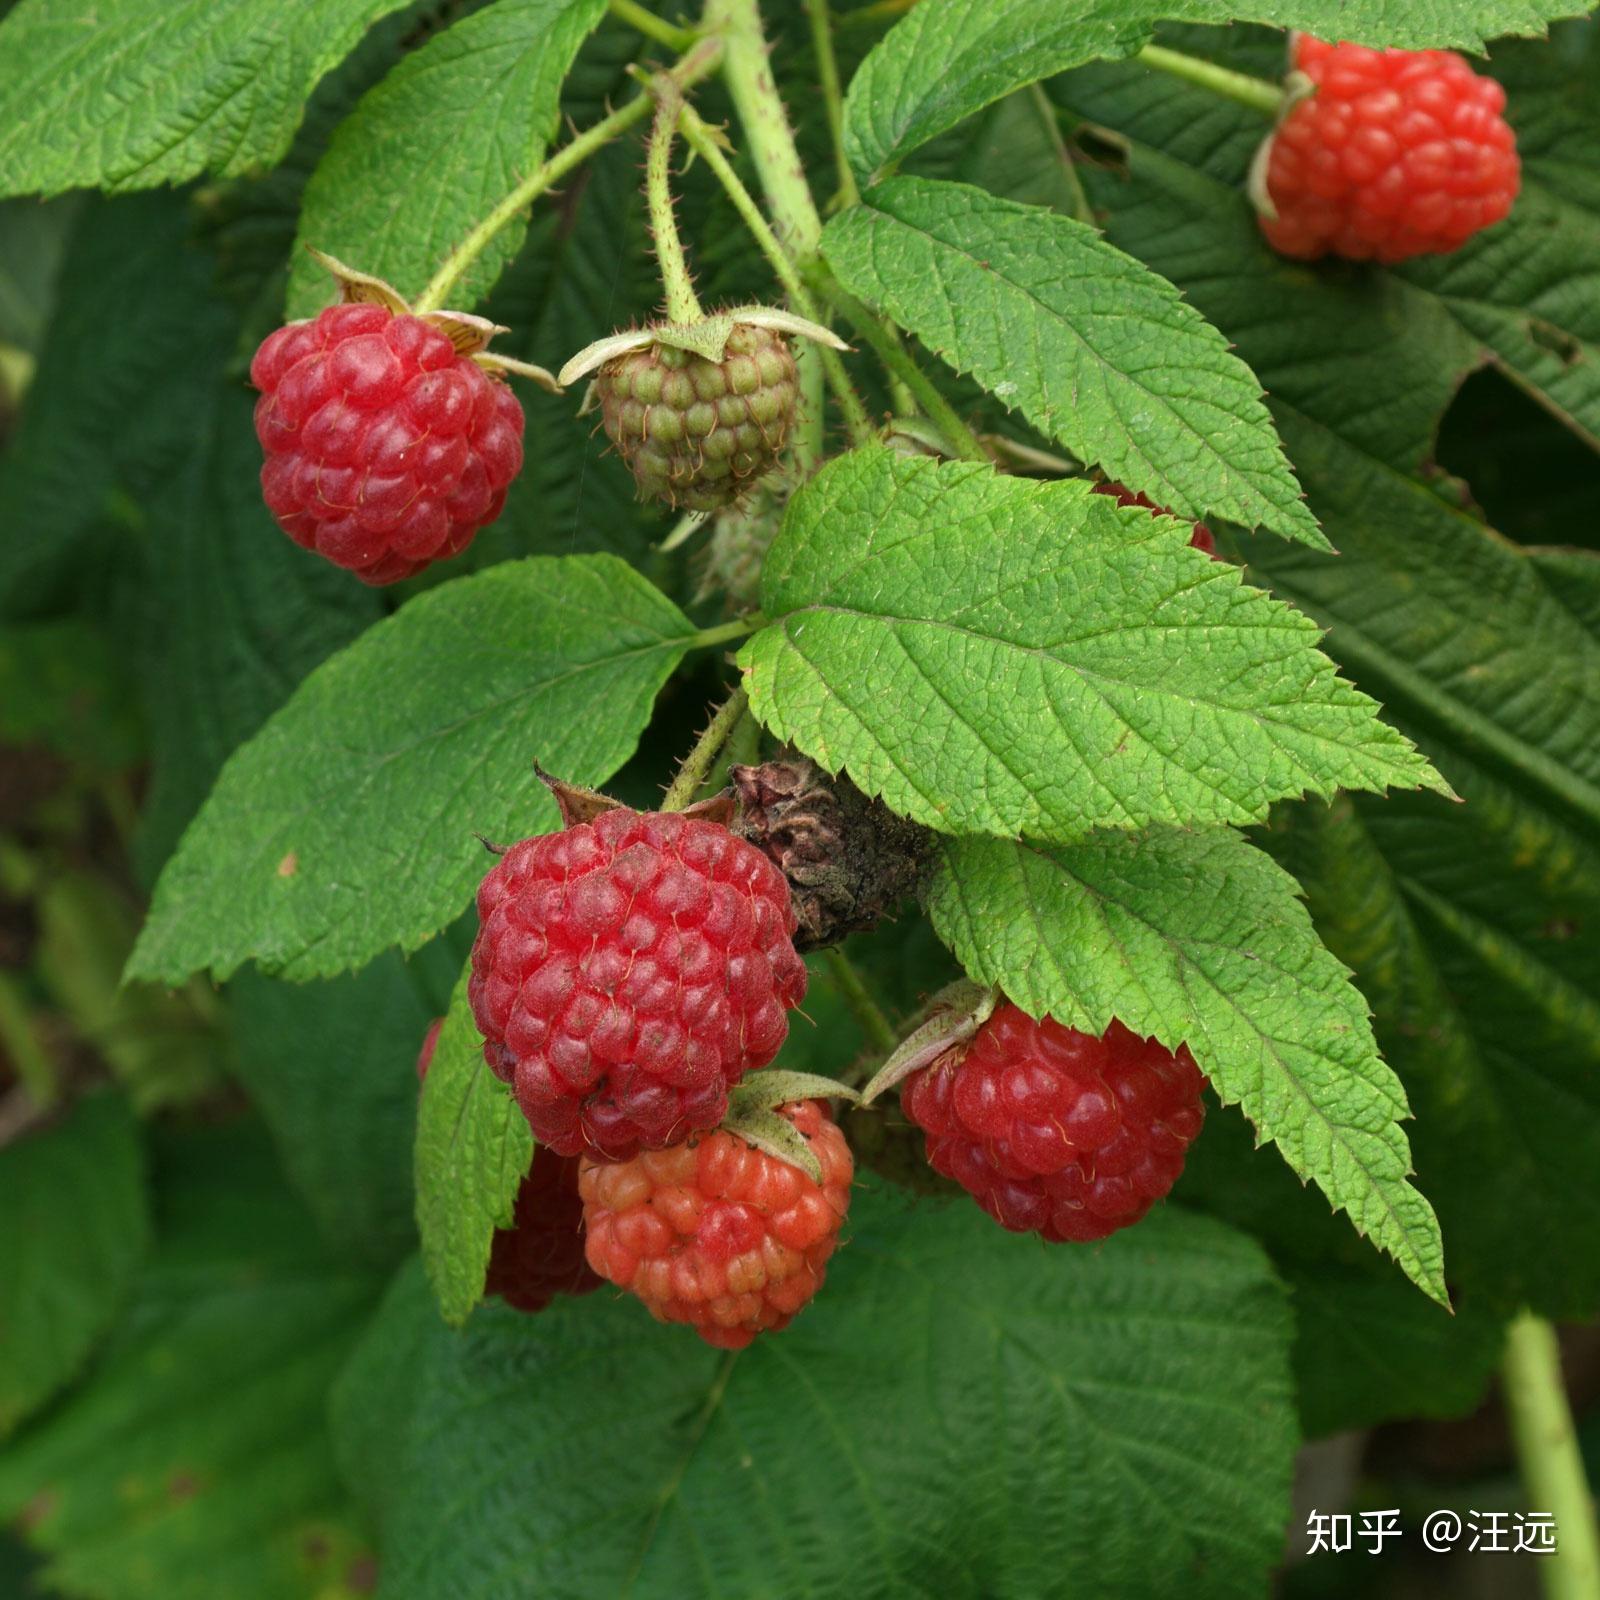 小红莓图片大全-小红莓高清图片下载-觅知网